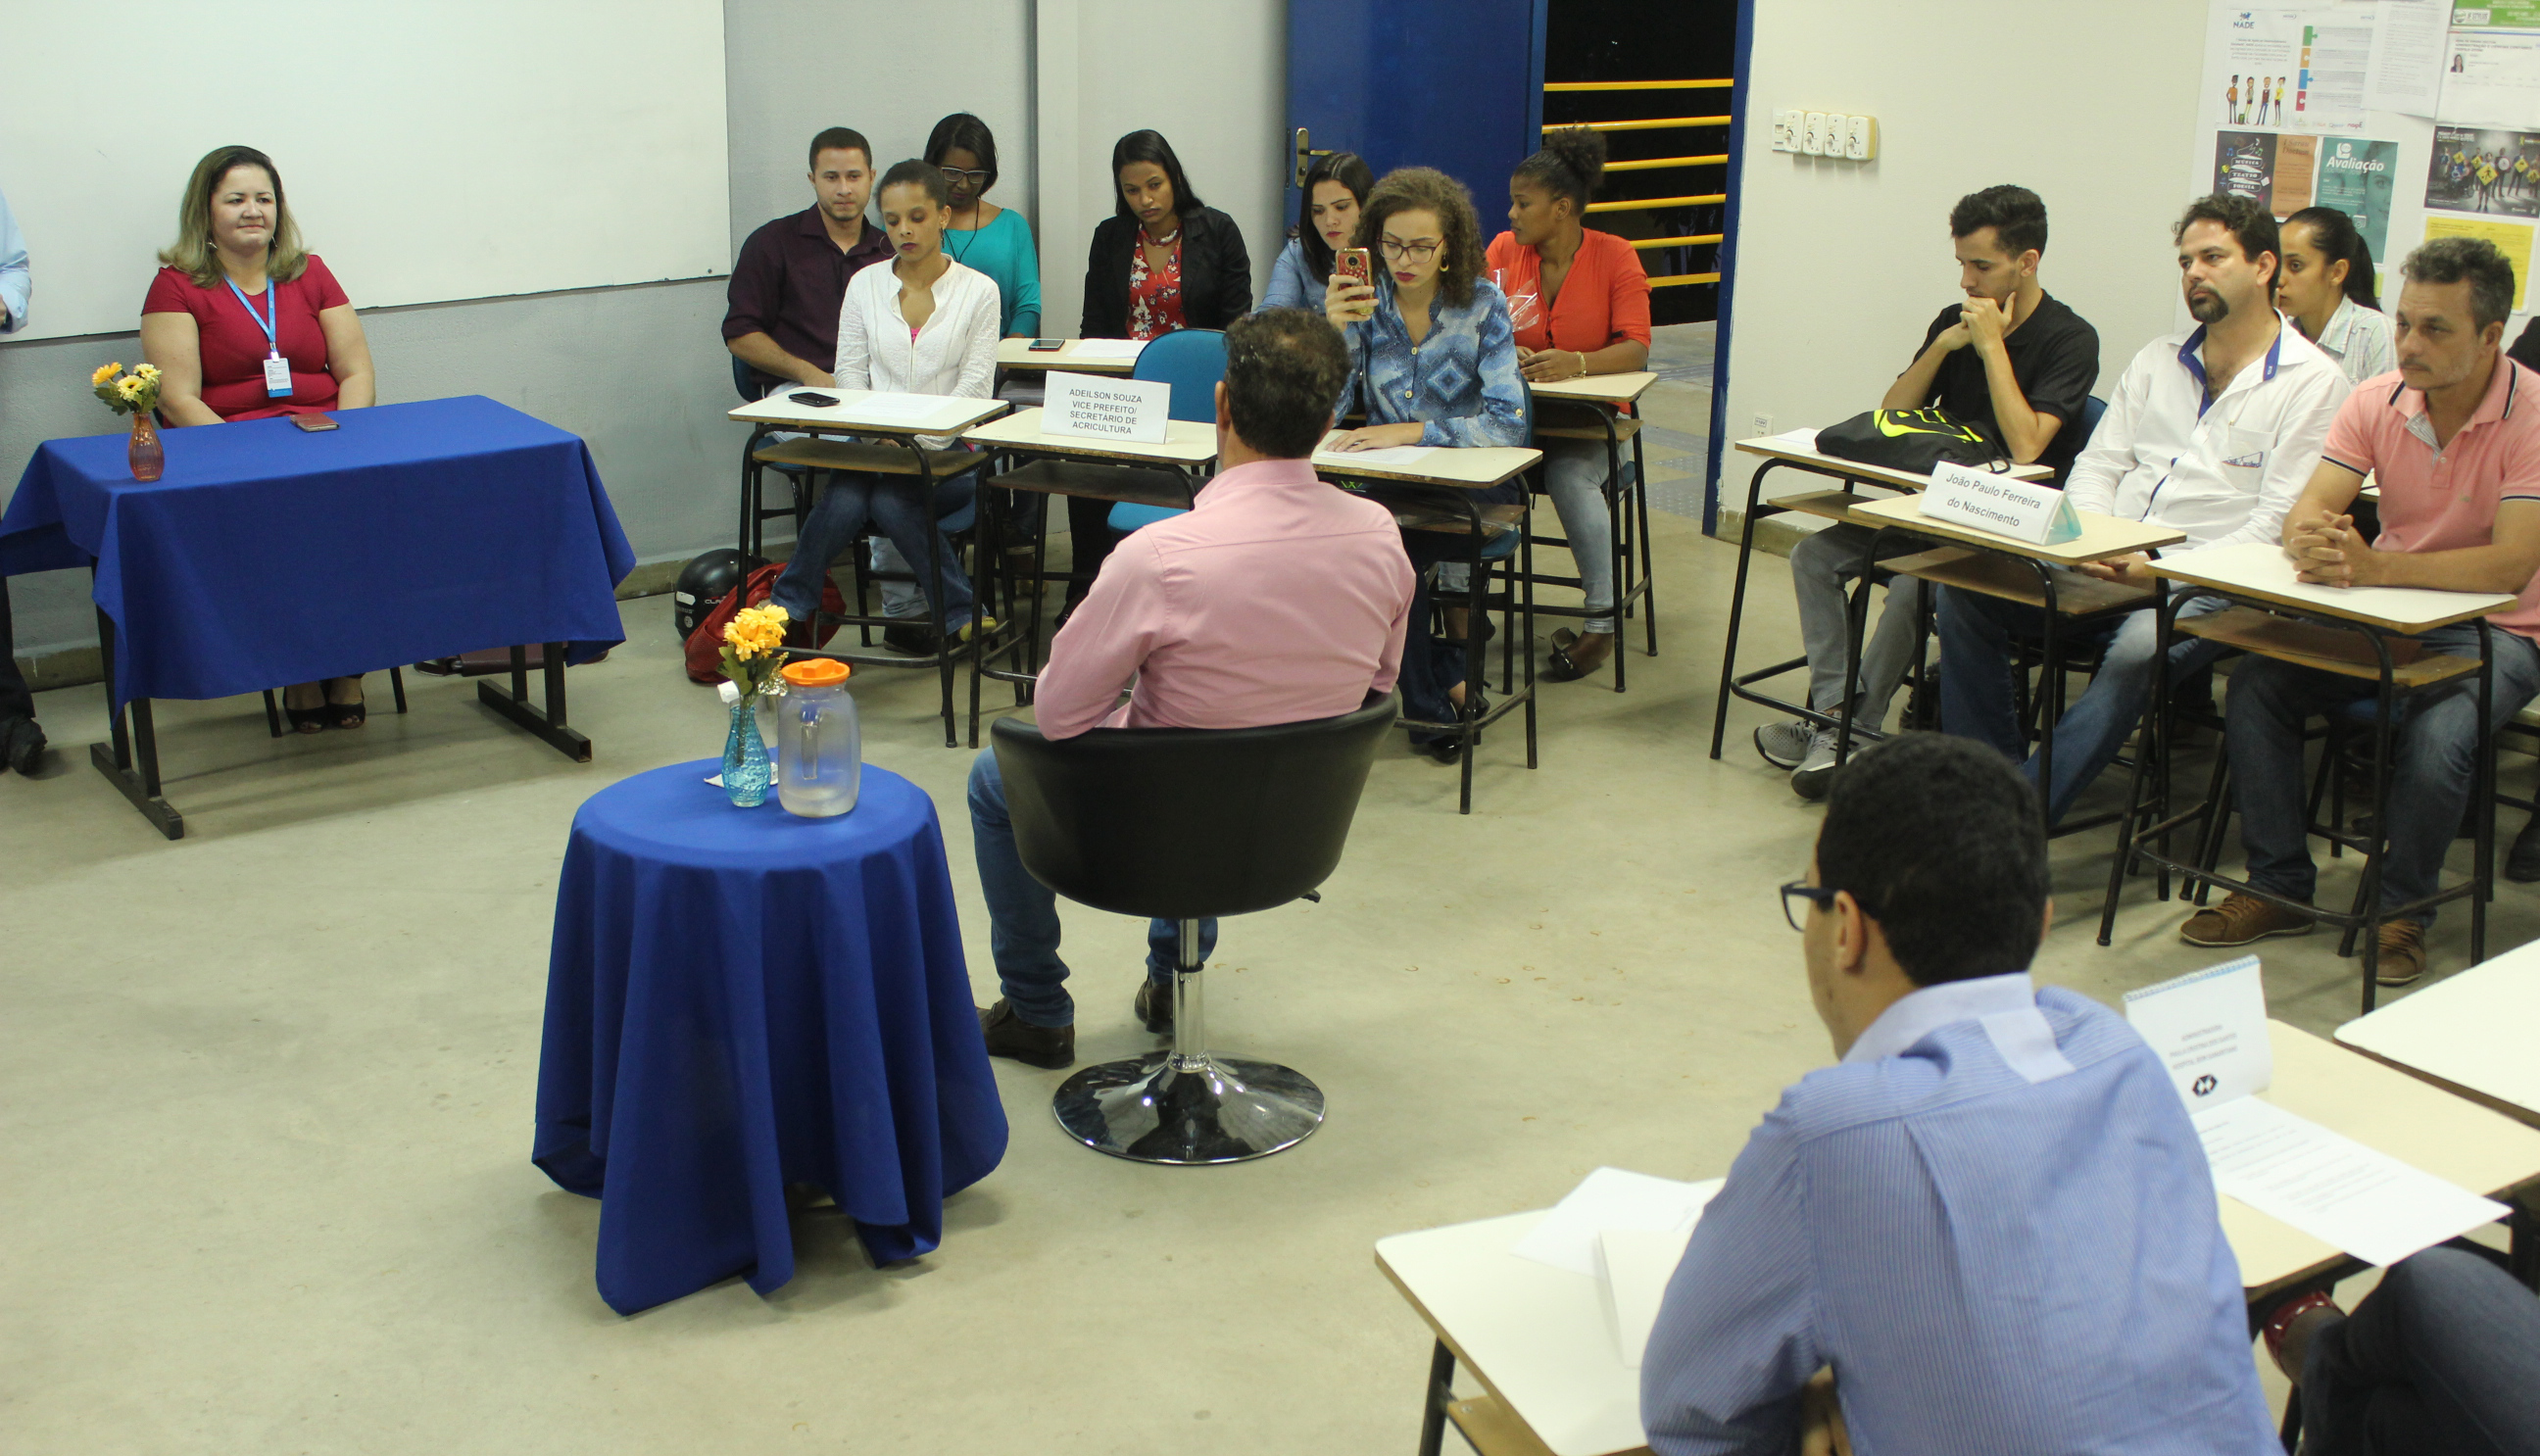 Em Teófilo Otoni, estudantes promovem debate aberto sobre Gestão Pública